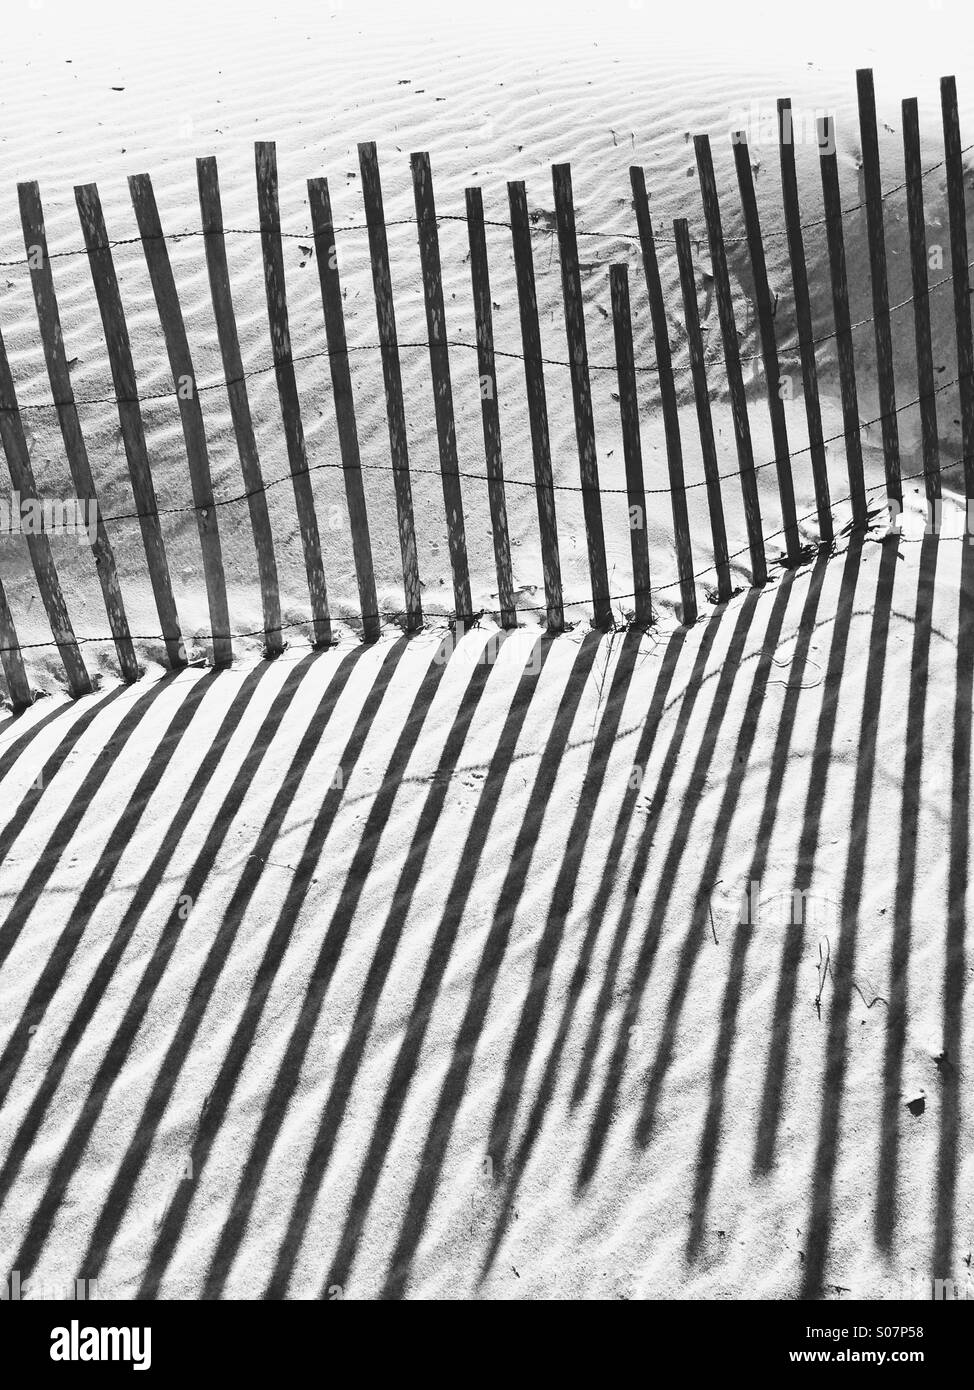 Starke Schatten von einem Zaun aus Holz Strand in einer Sanddüne, in Fett schwarz und weiß. Golfküste, Florida, USA. Stockfoto